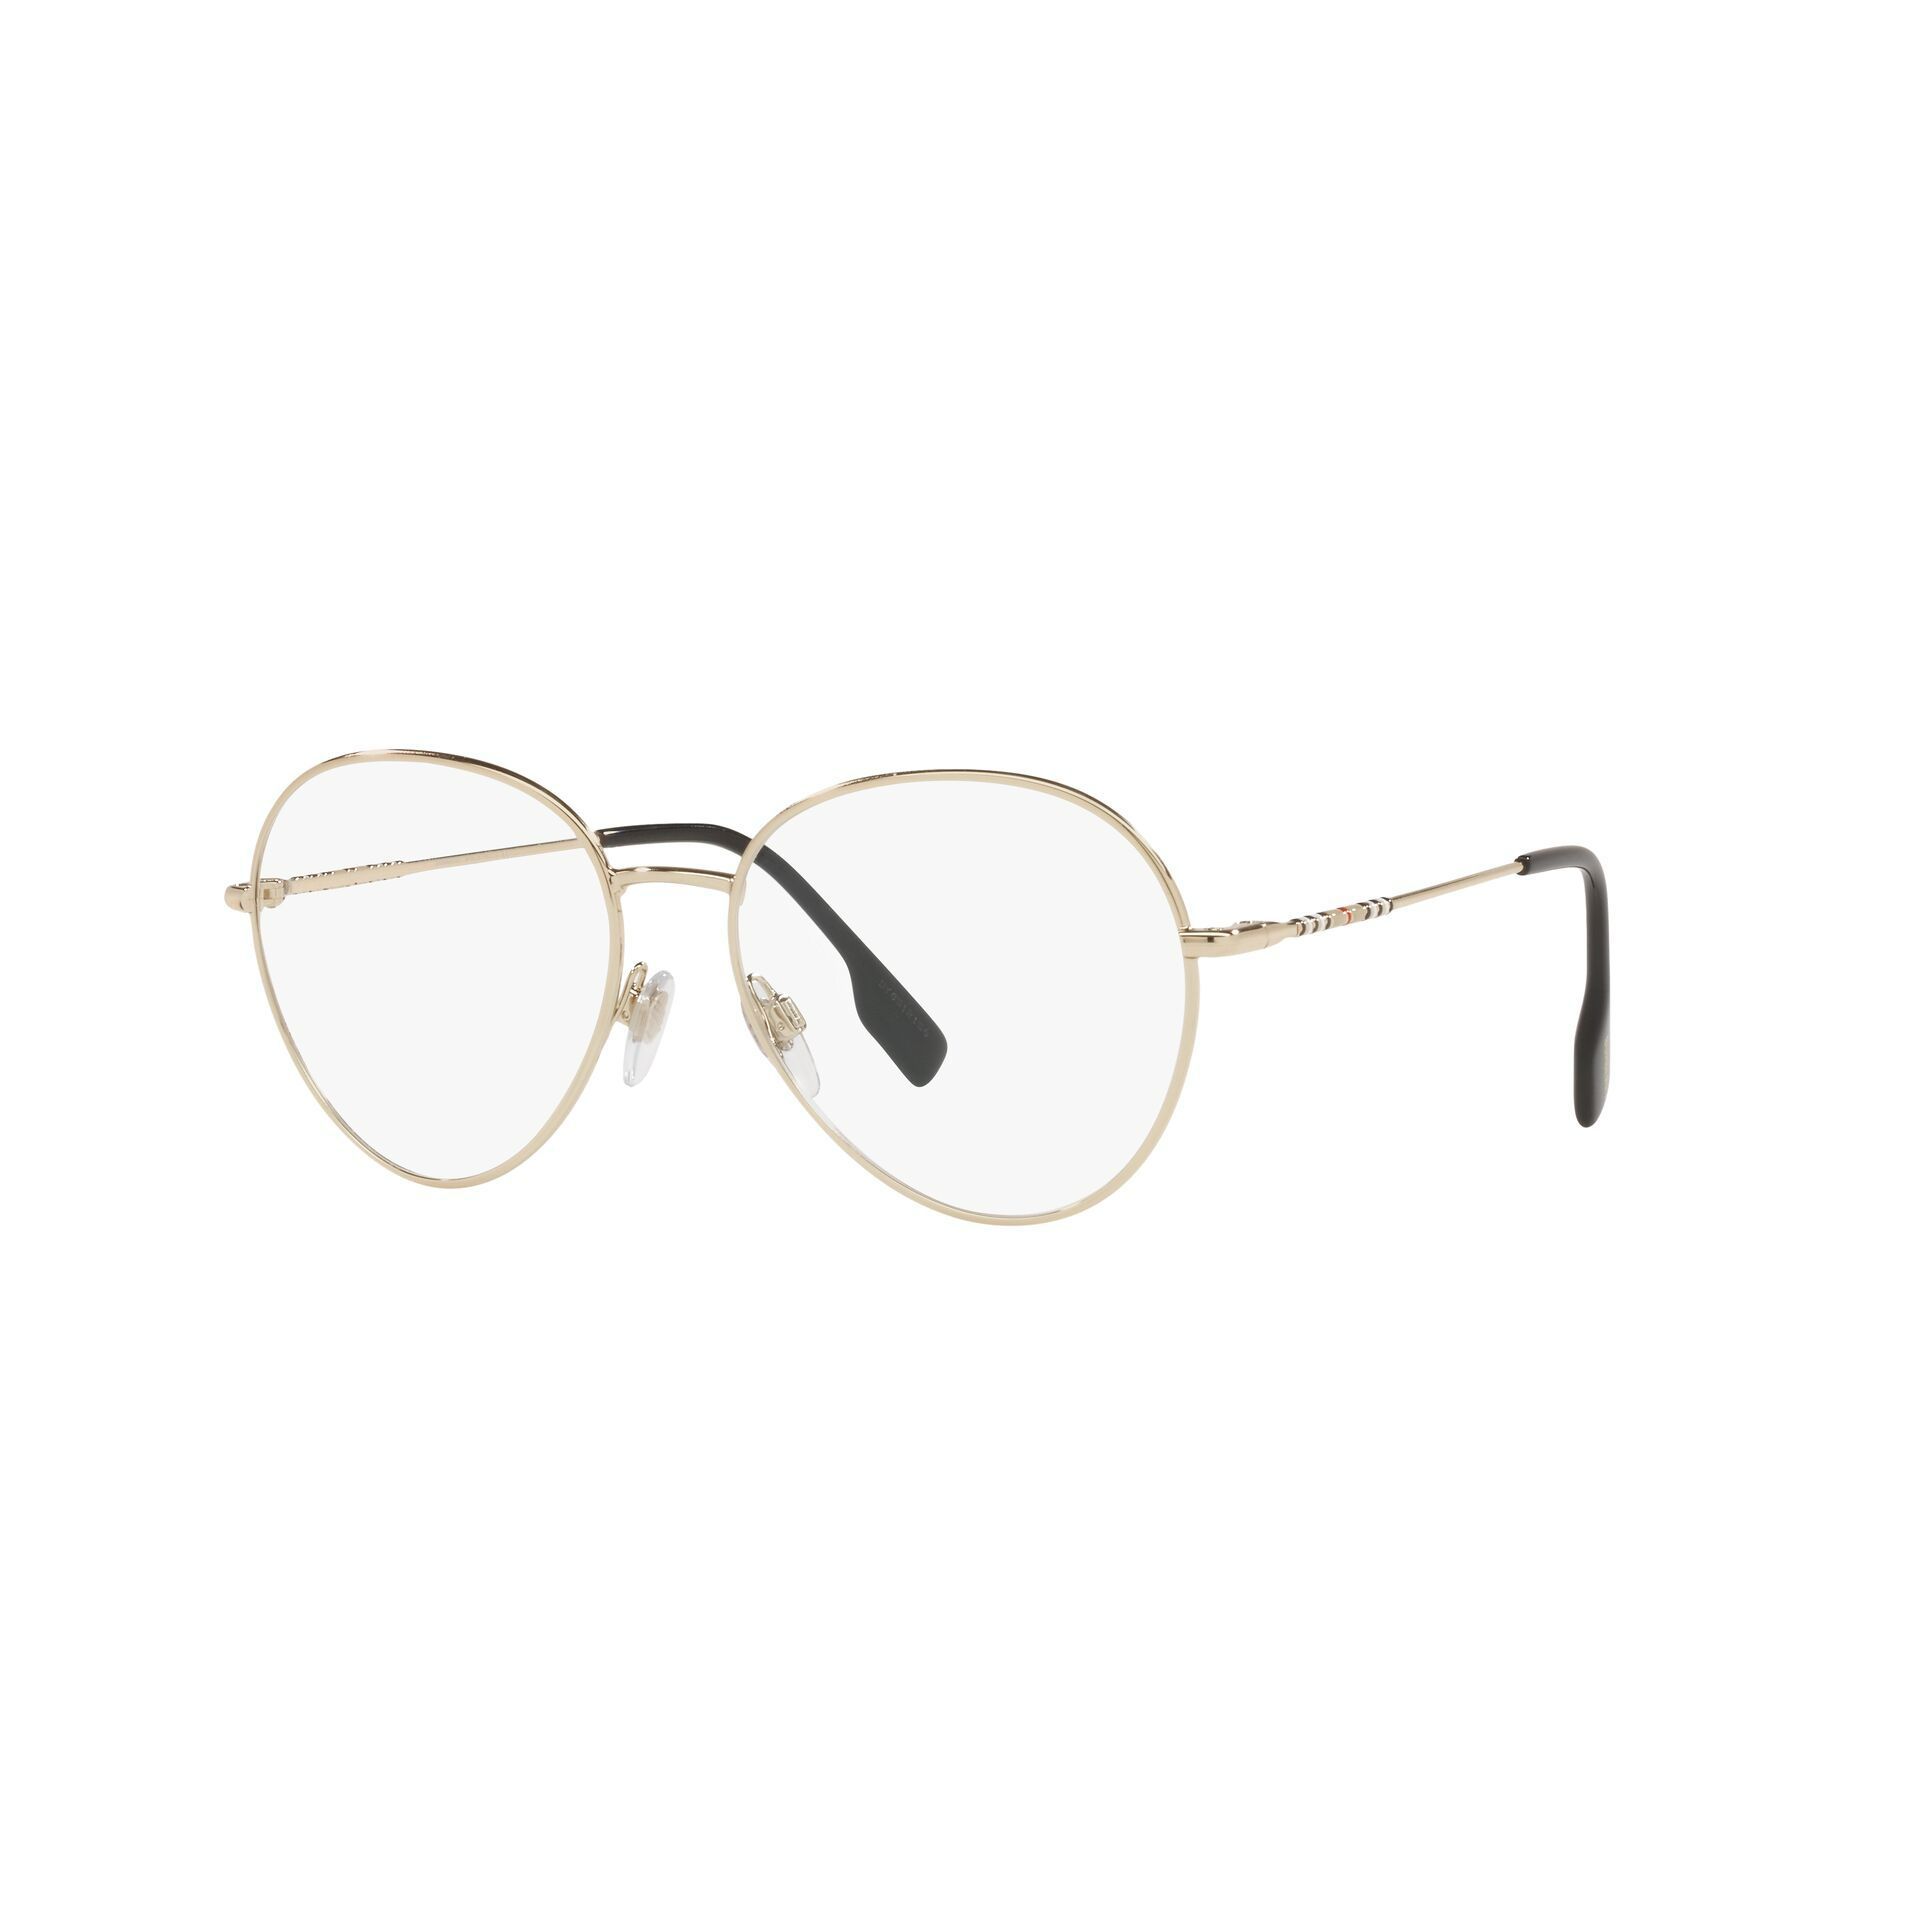 BE1366 Round Eyeglasses 1109 - size  54